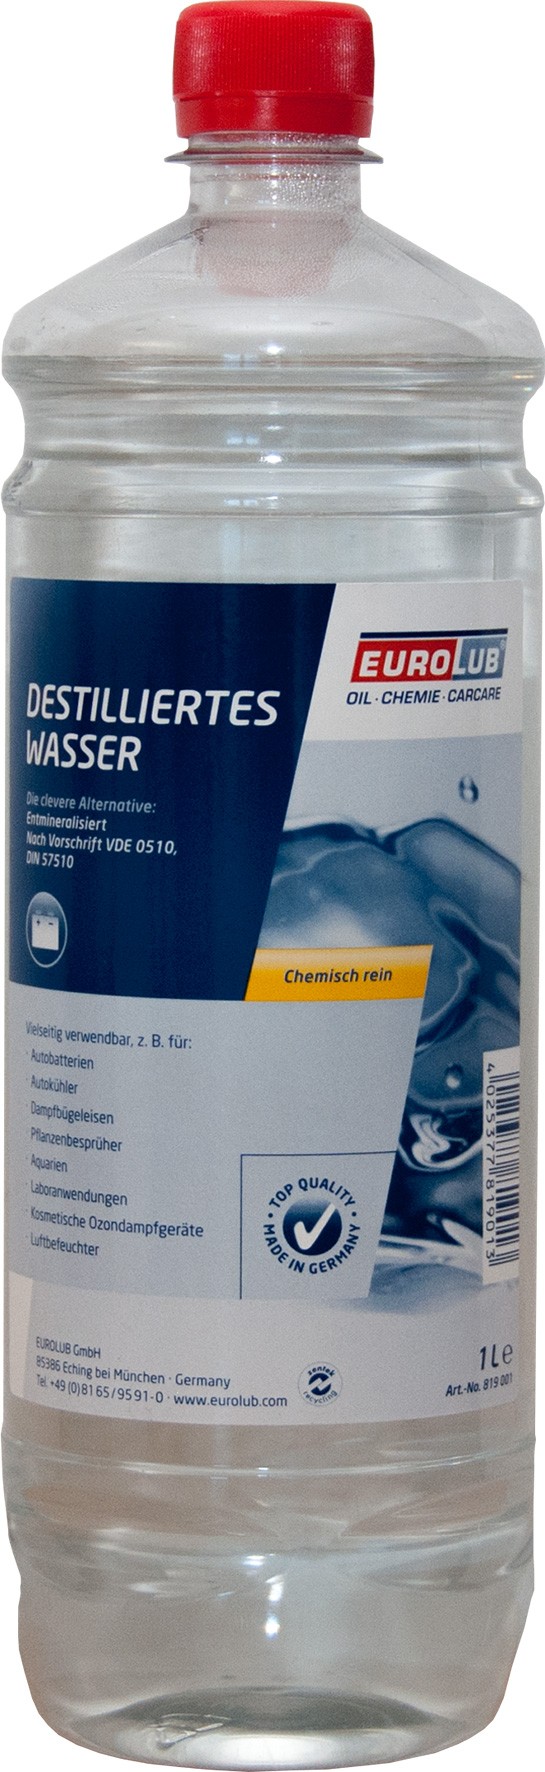 EUROLUB Destilliertes Wasser 1l